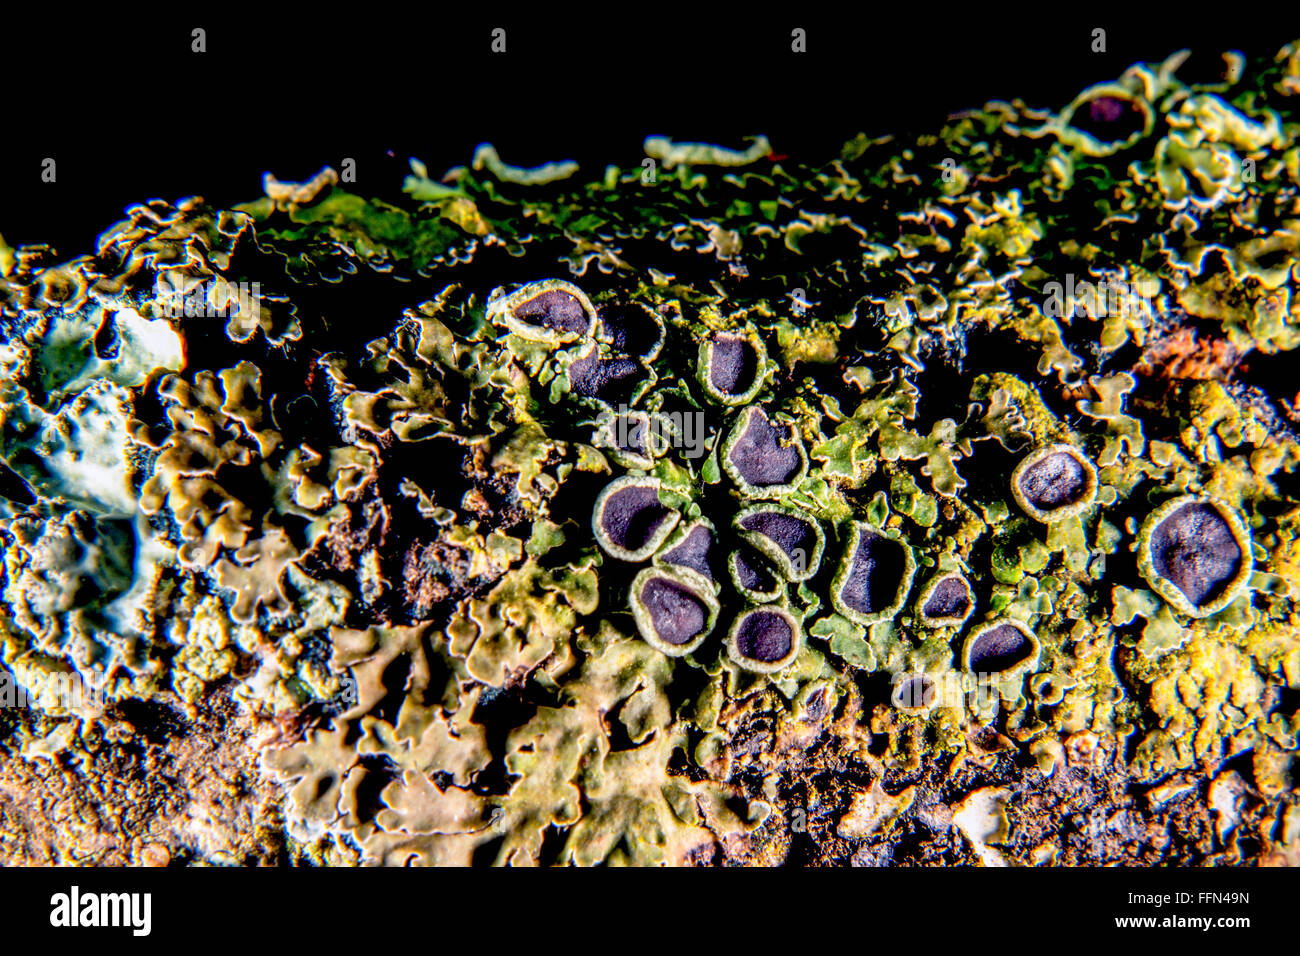 Lichen close-up Stock Photo